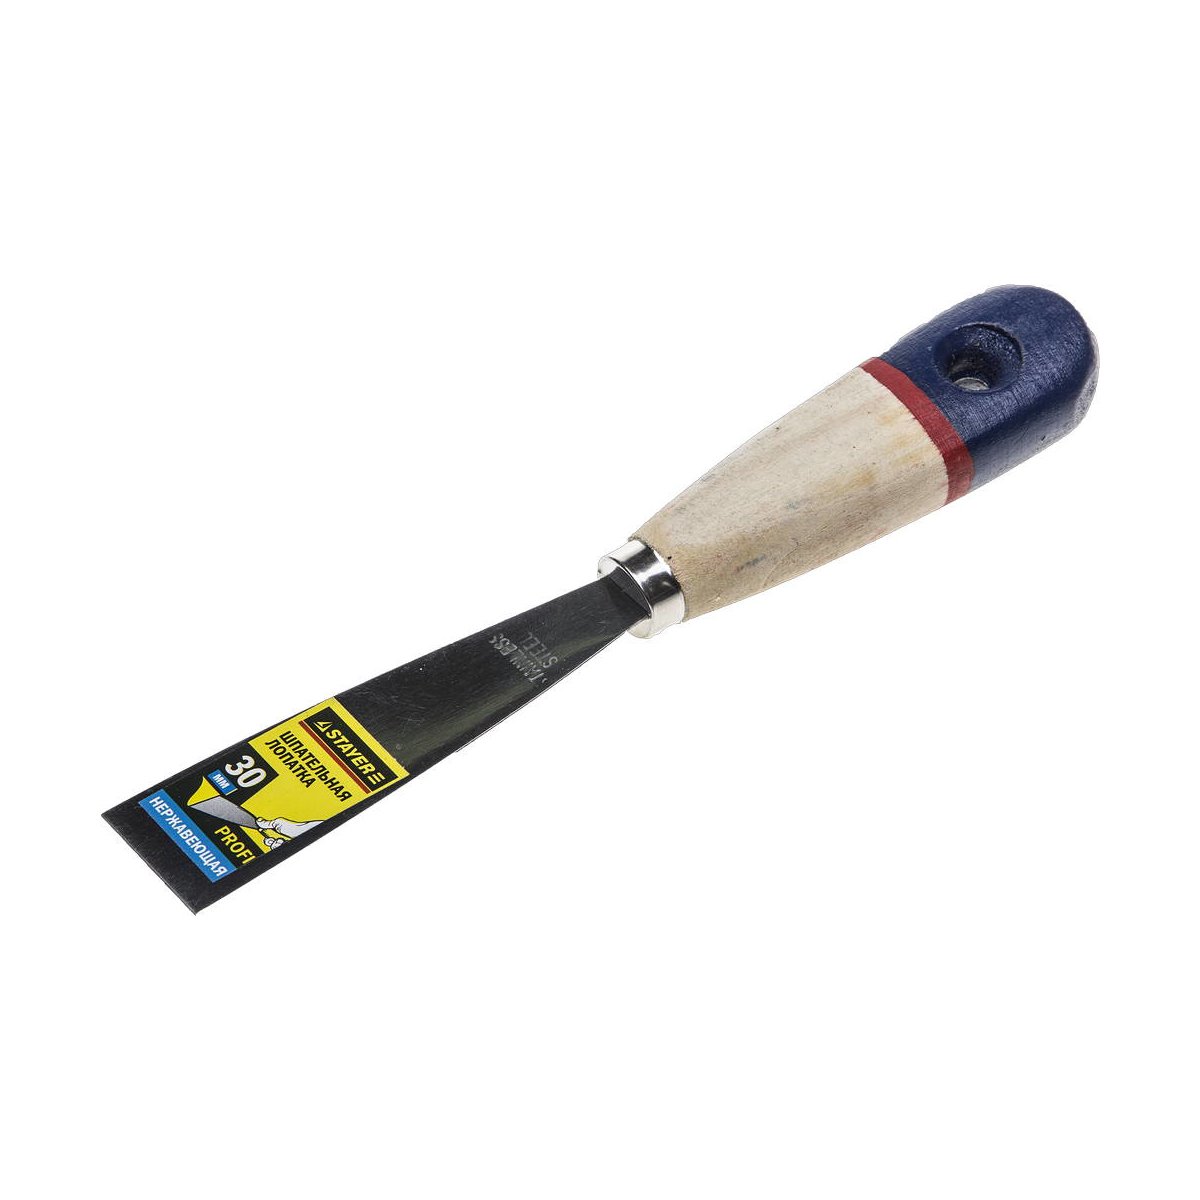 STAYER 30 мм, нержавеющее полотно, деревянная ручка, шпательная лопатка 10012-030